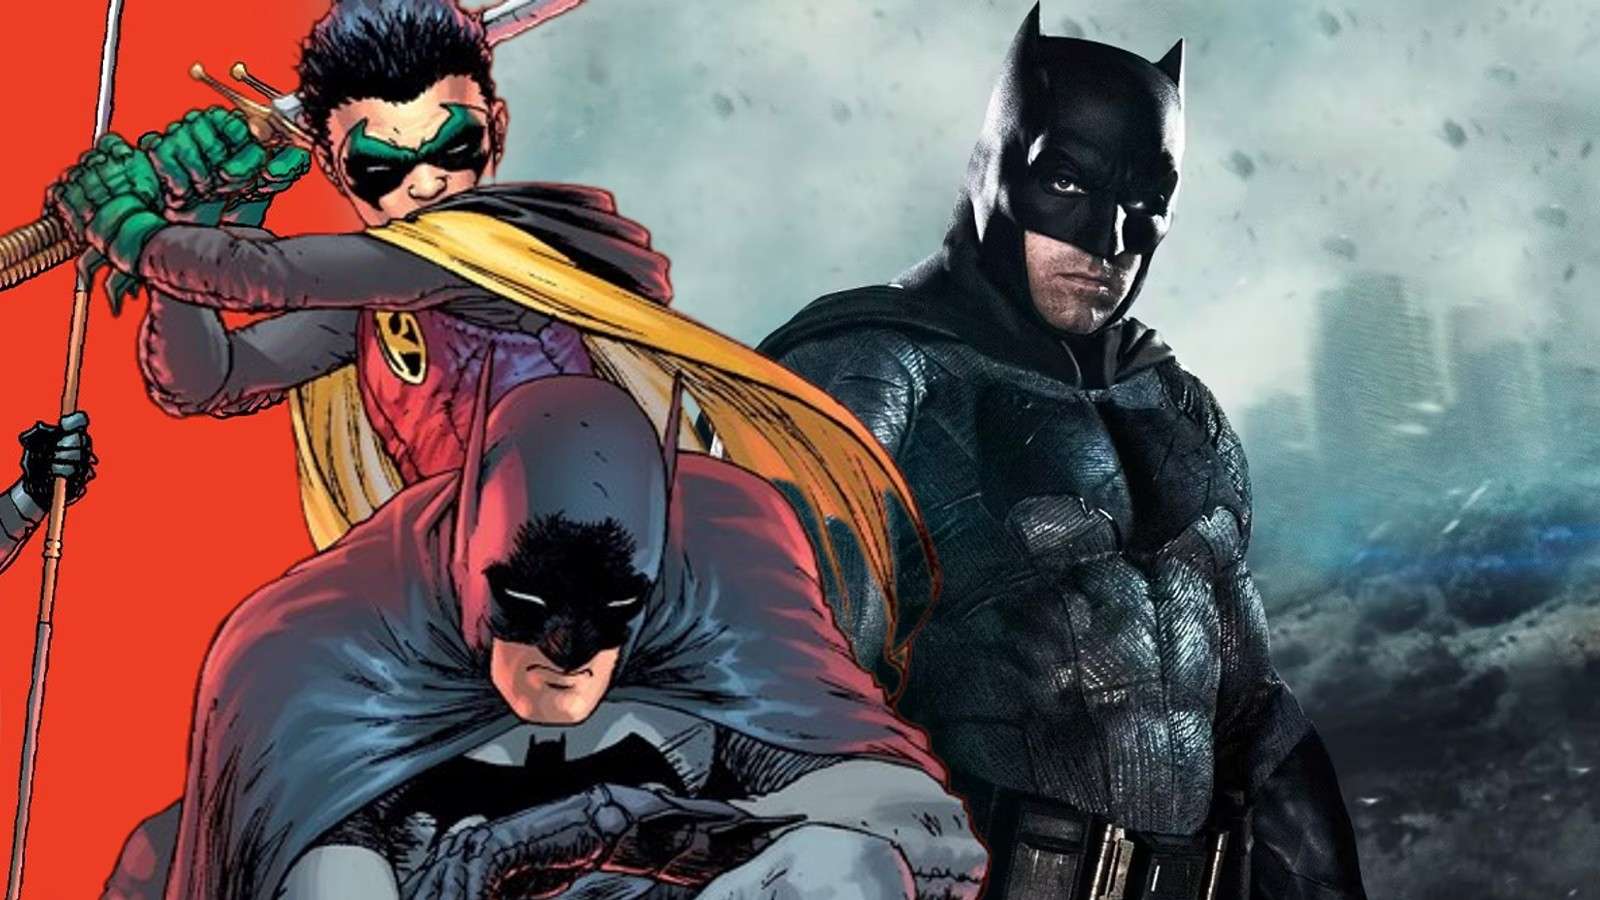 Batman and Robin in the comics and Ben Affleck as Batman